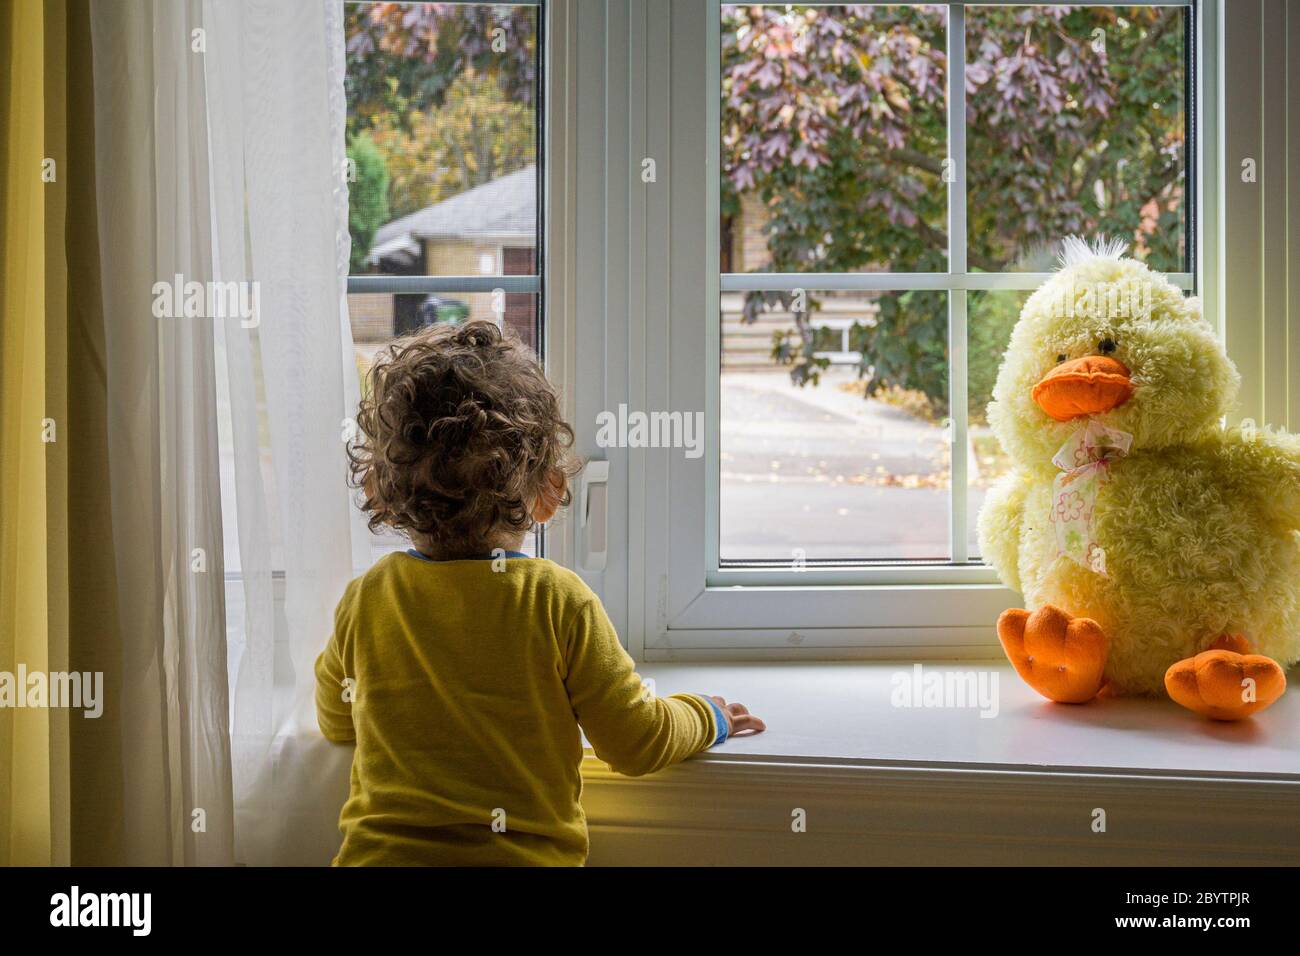 Kleines Kleinkind, das durch das Fenster hinausschaut und seine Plüschente ihm gegenüber sieht Stockfoto